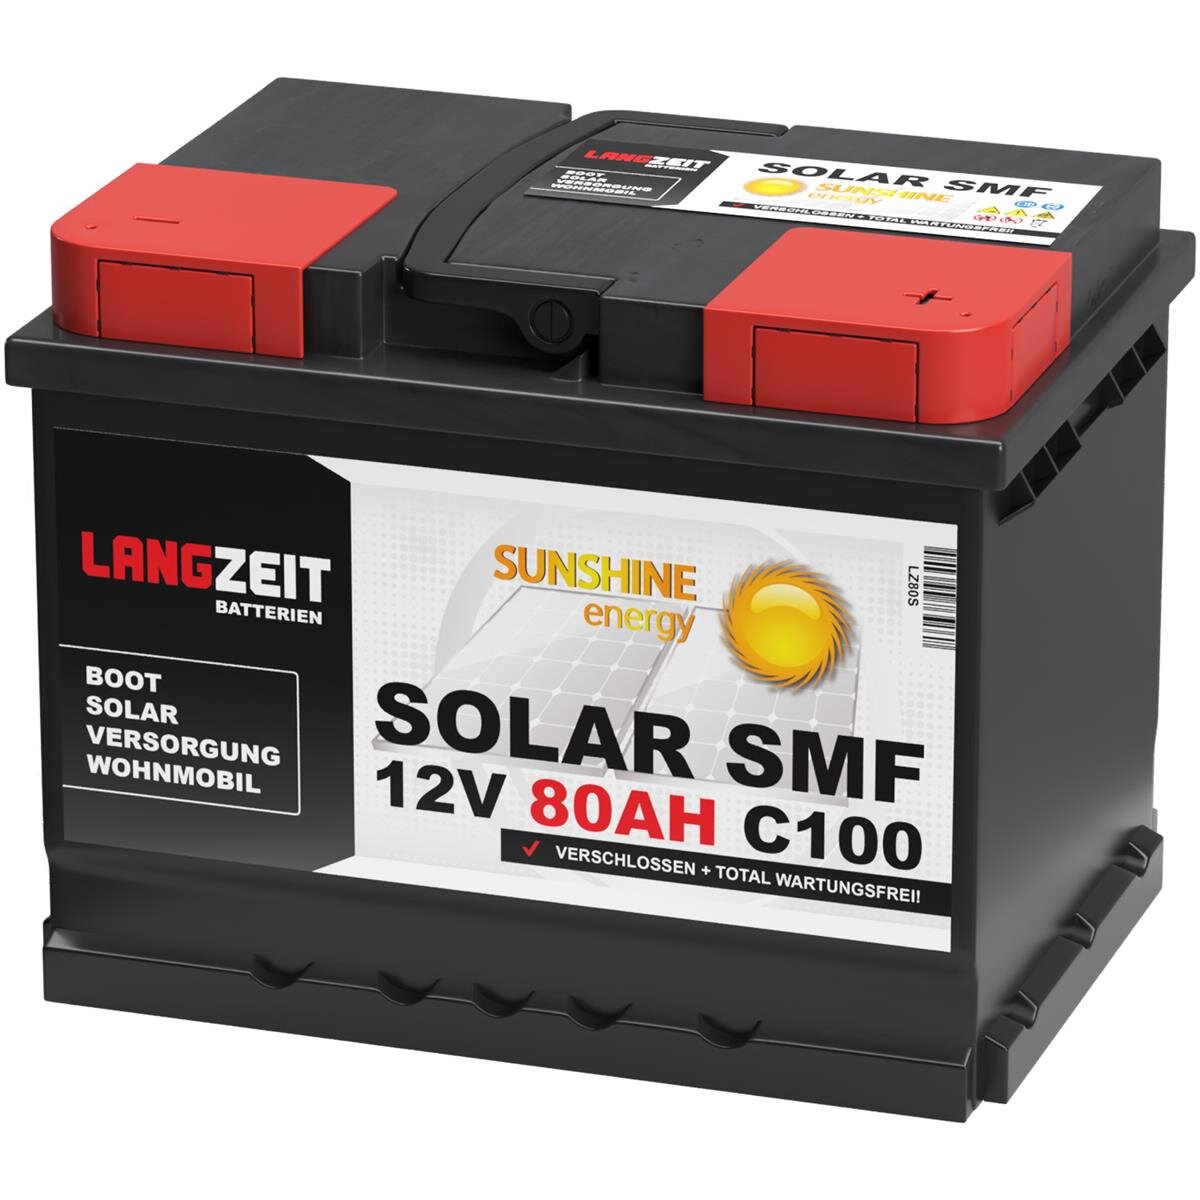 Universal Power Semitraktion UPA12-80 12V 80Ah (C100) Solar Batterie  Wohnmobilbatterie zyklenfest, Versorgungsbatterie, Caravan, Batterien  für